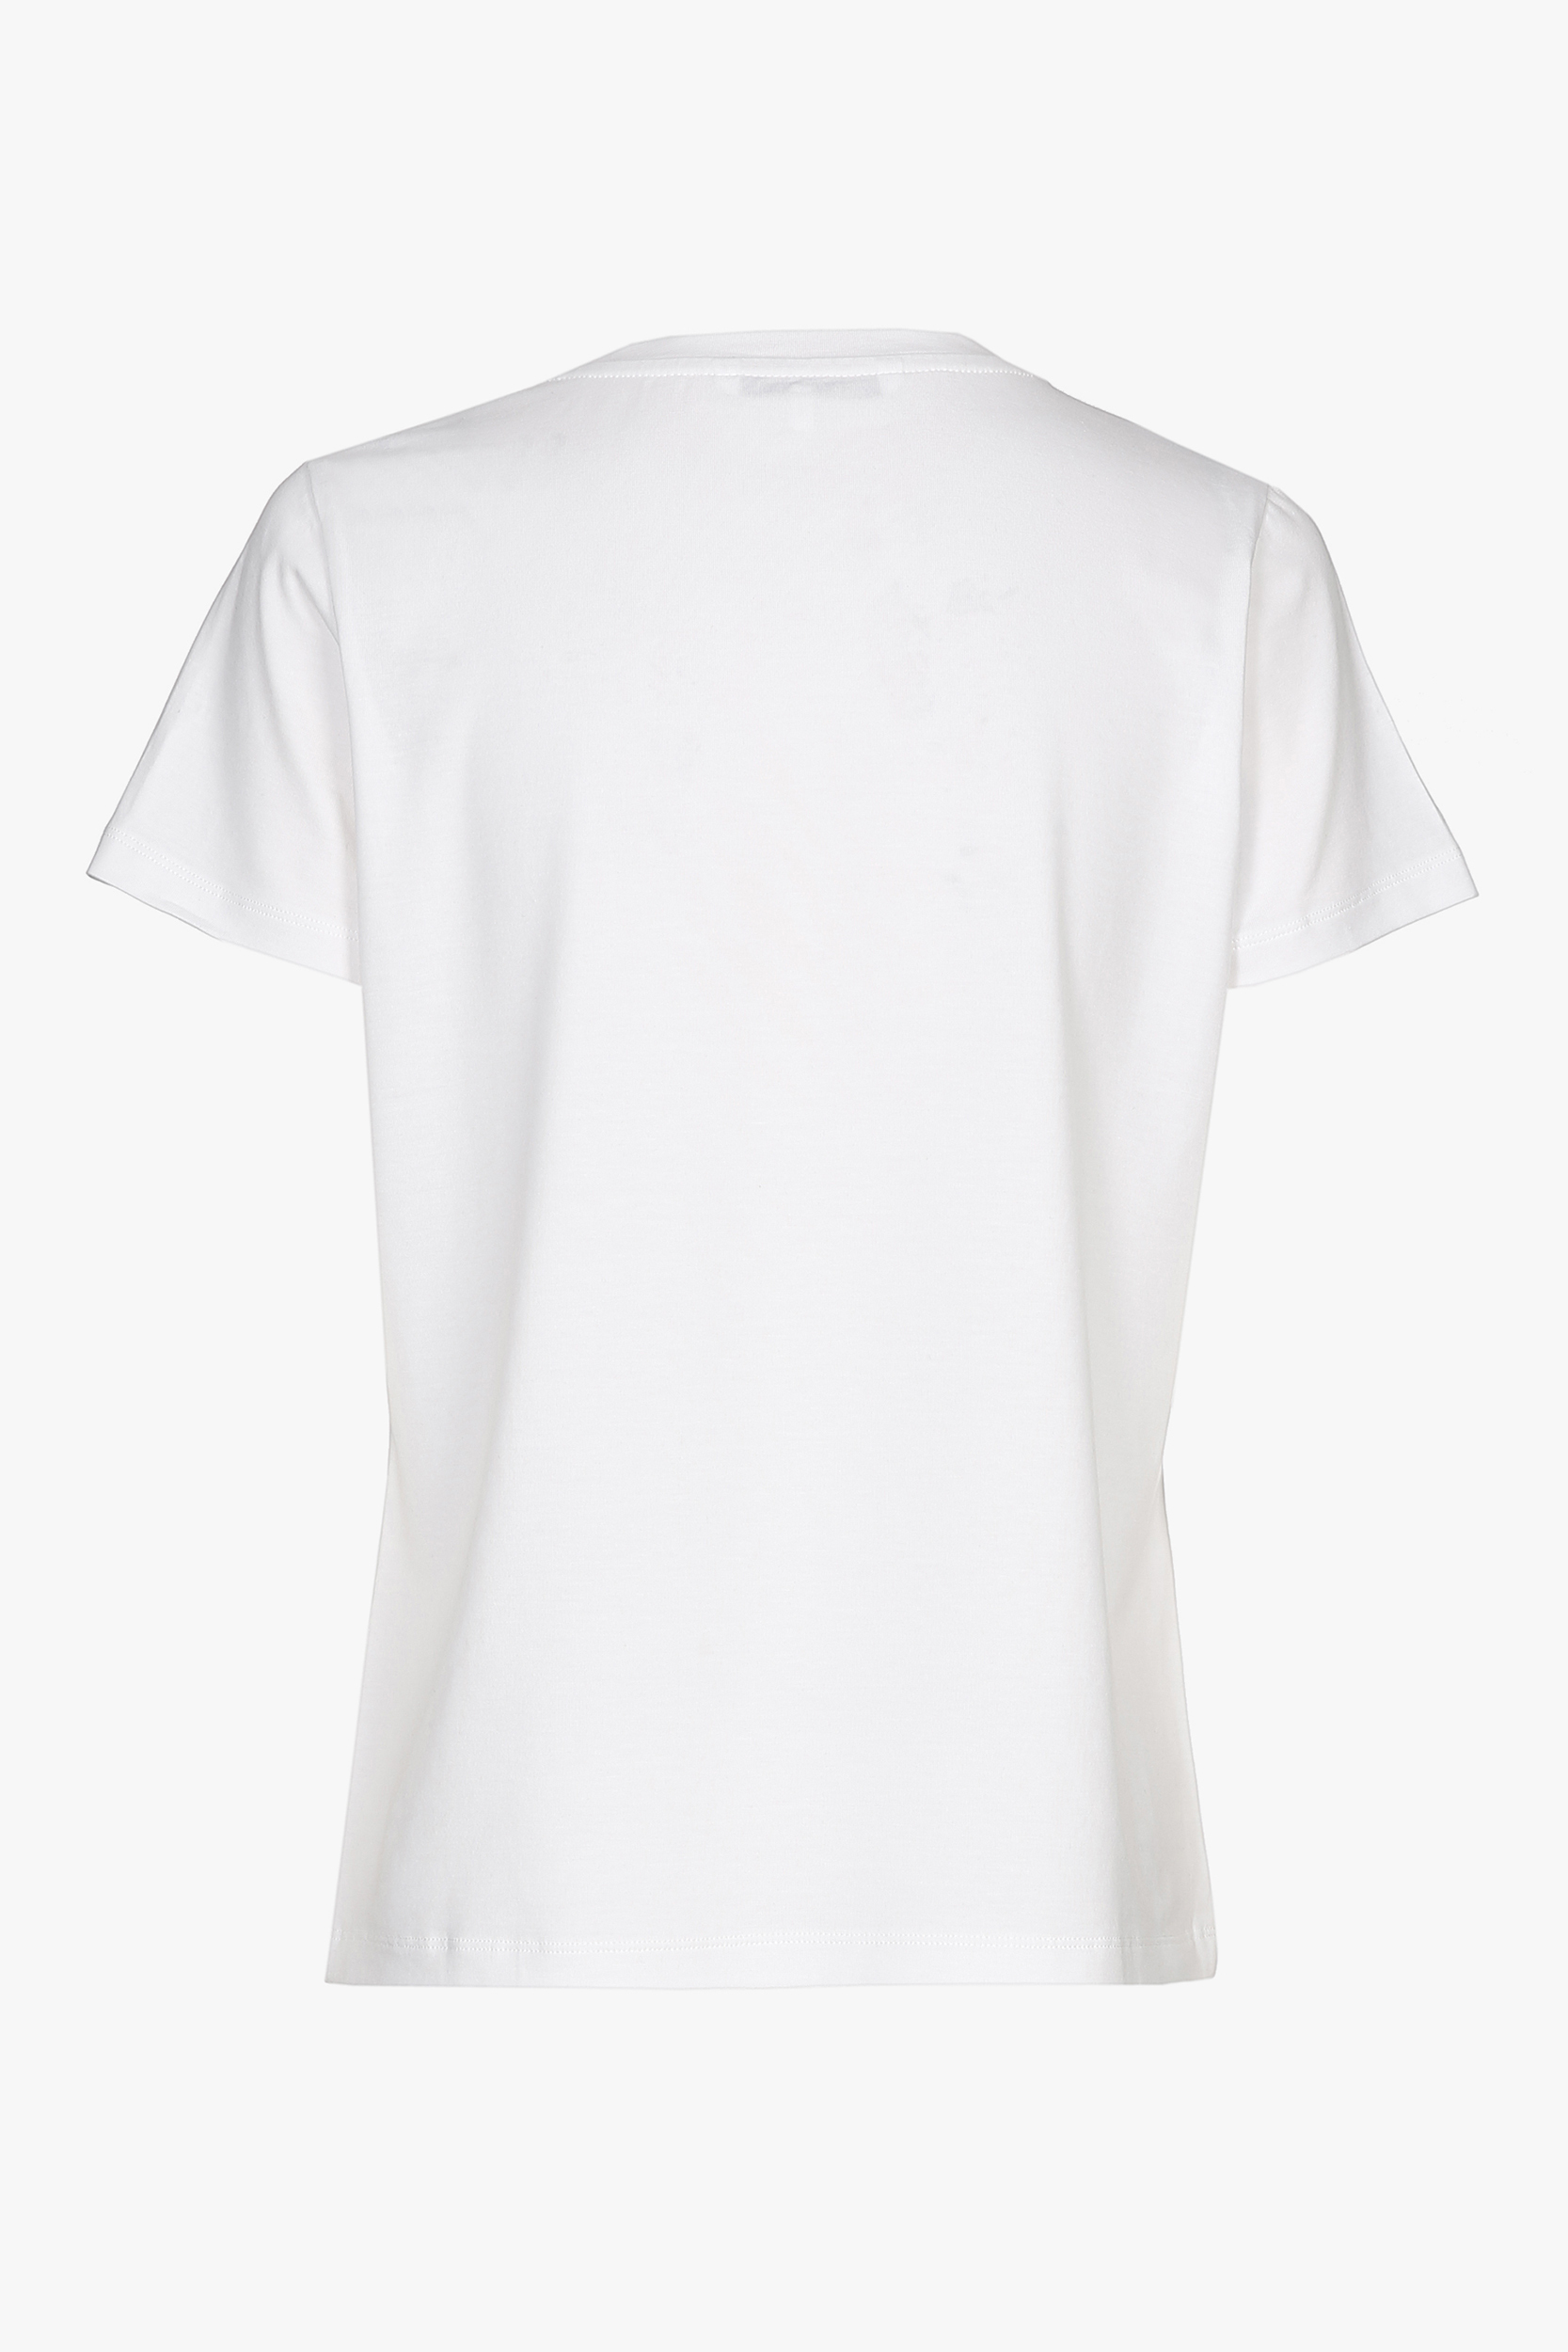 T-shirt blanc à manches courtes et col rond